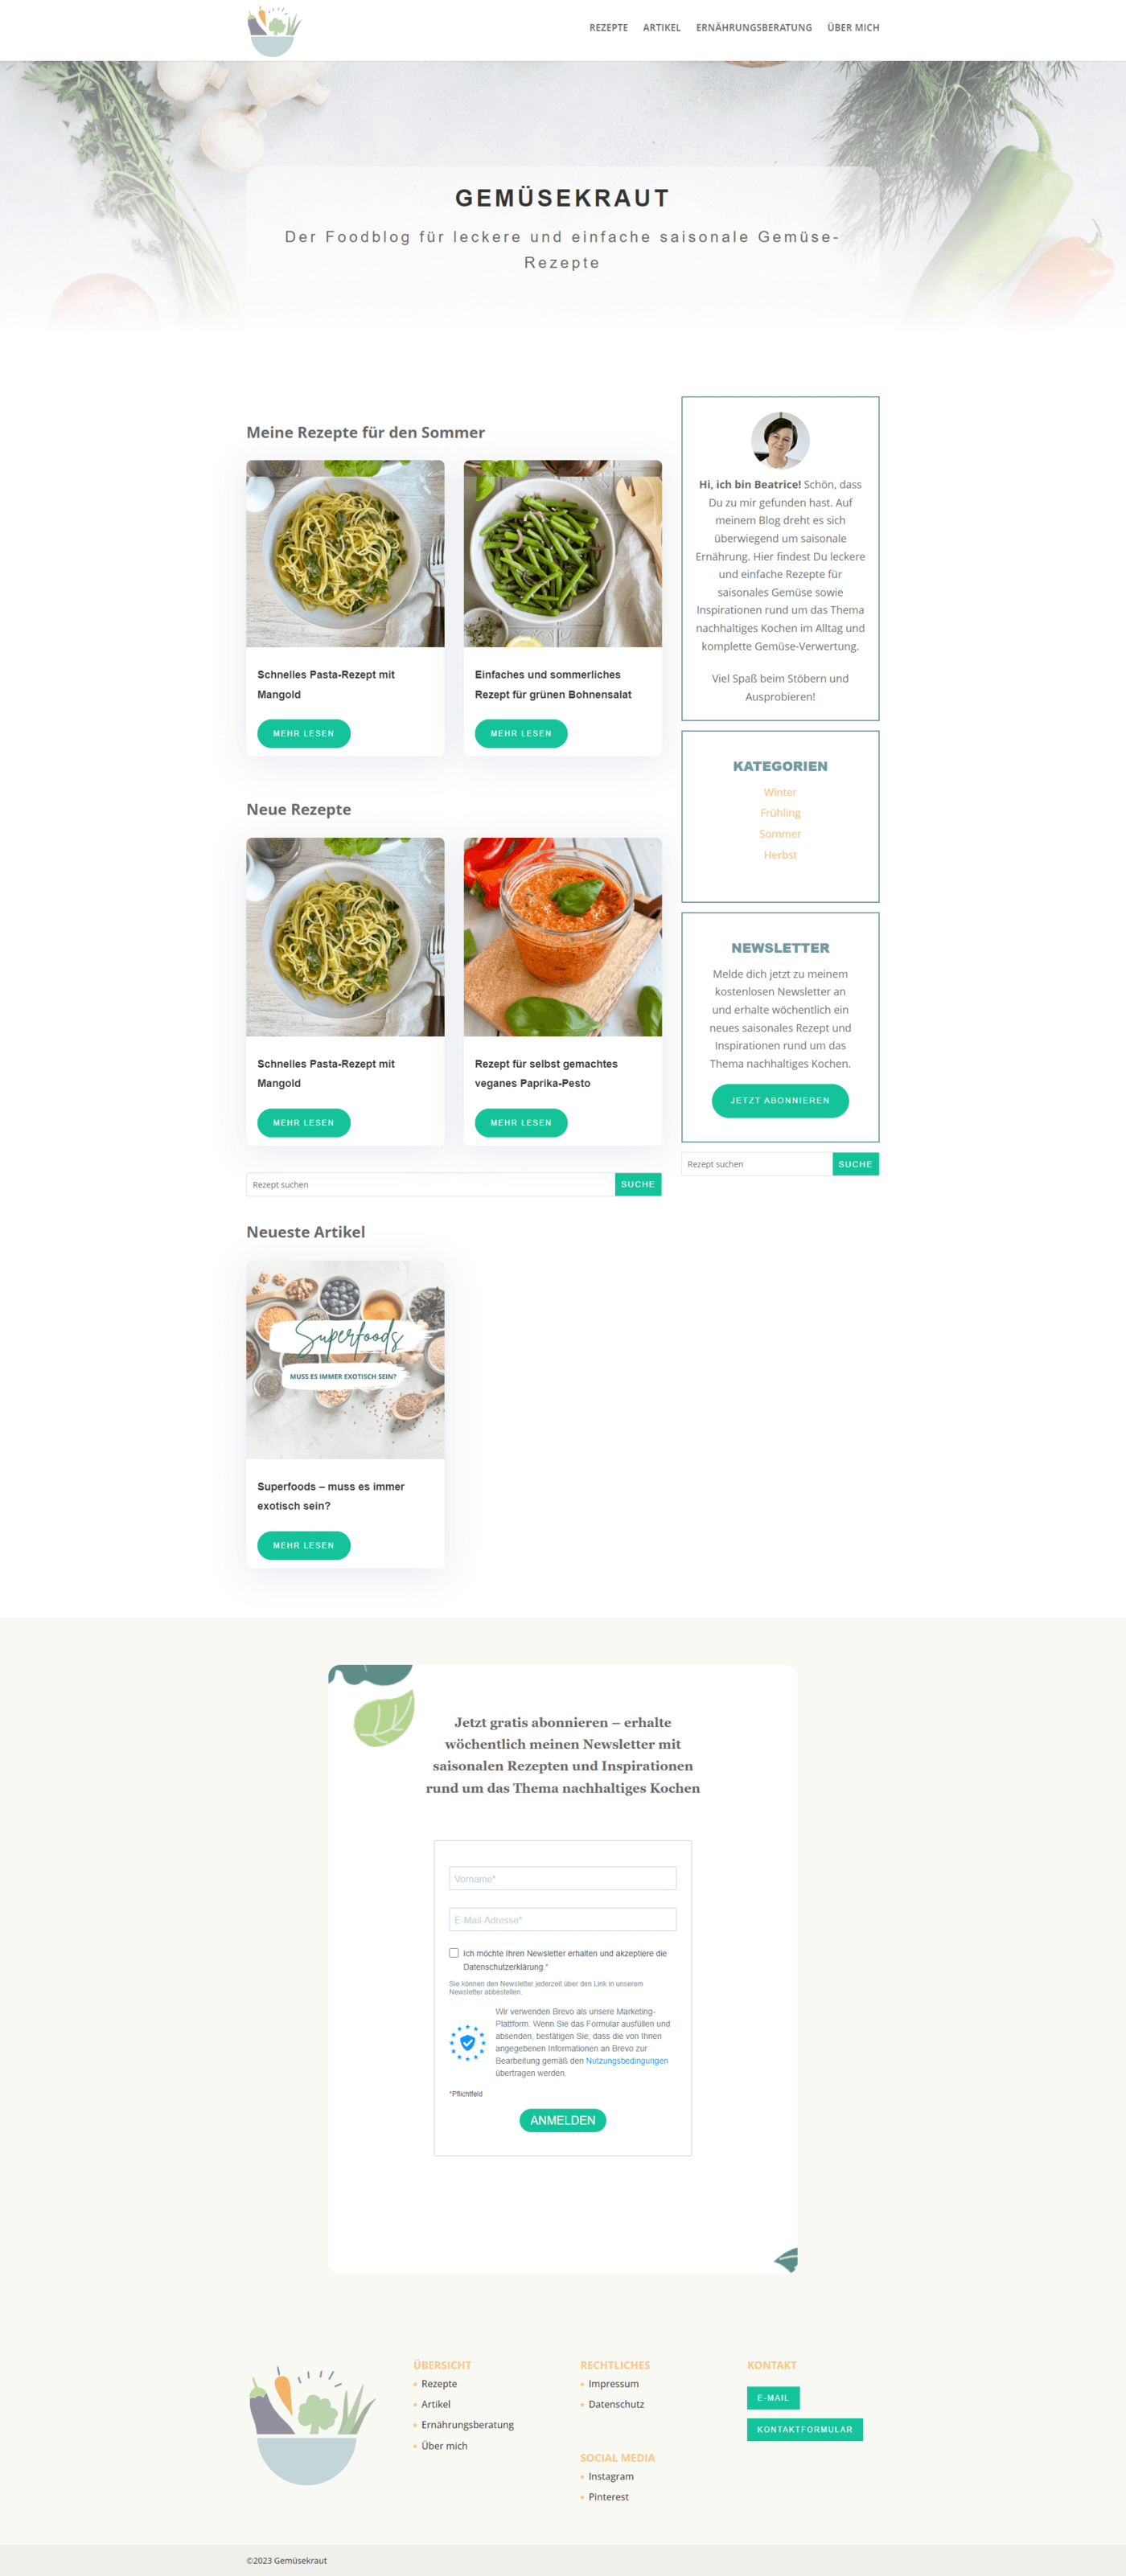 Website für Gemüsekraut